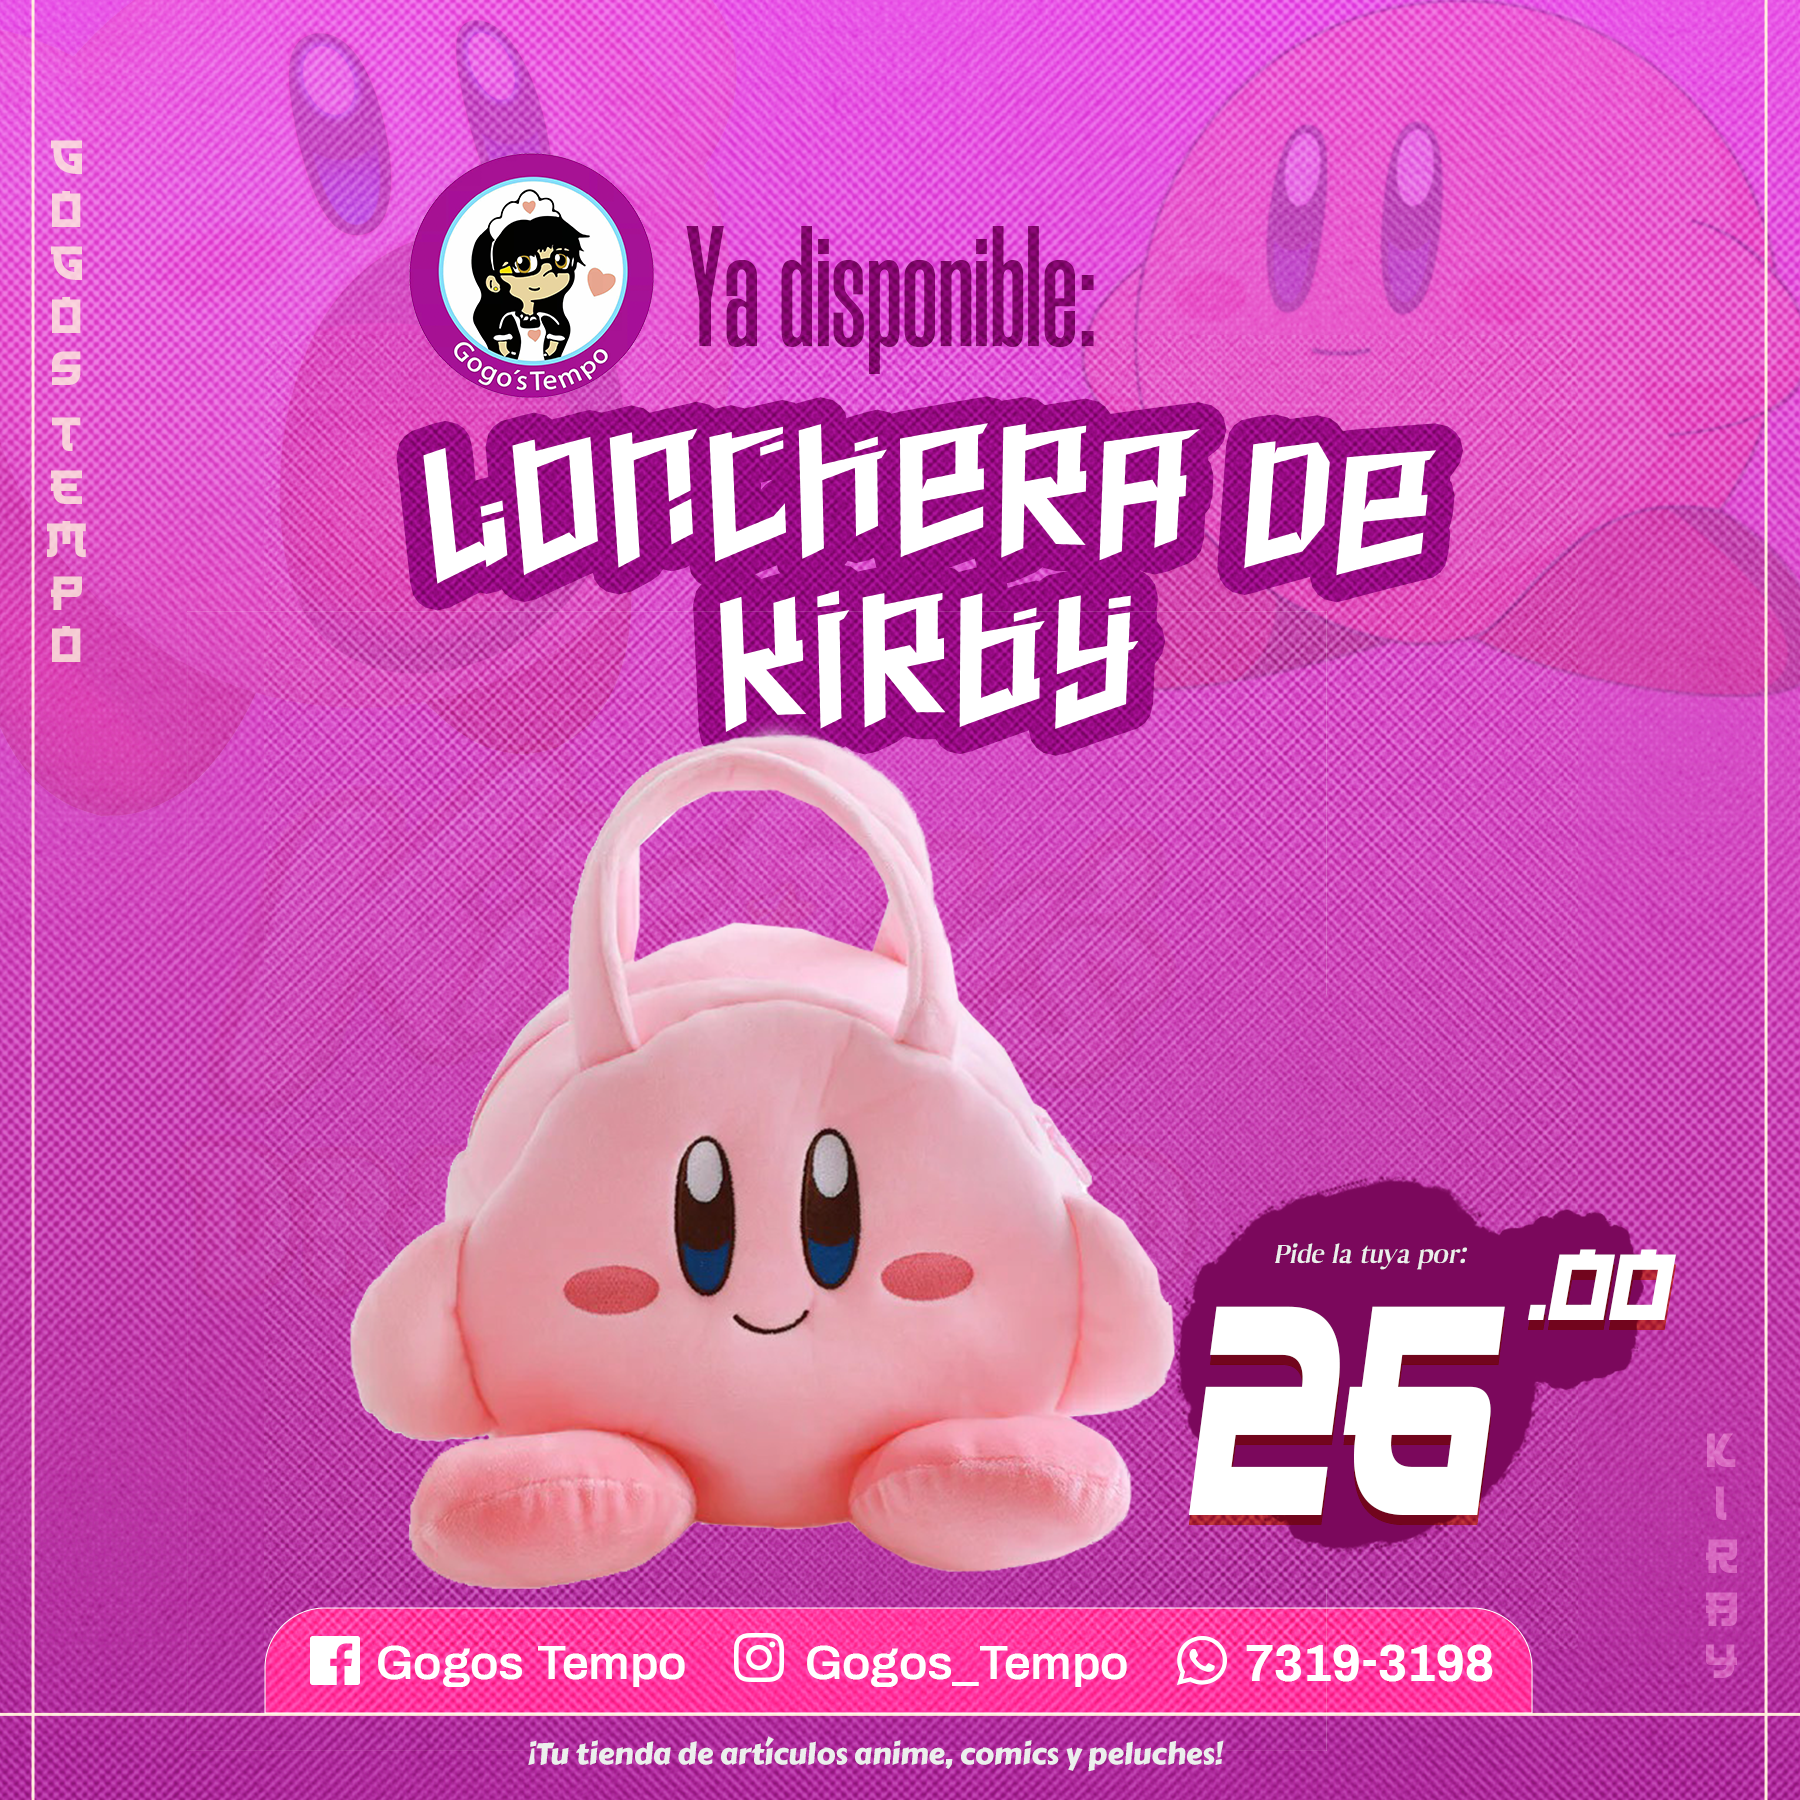 Lonchera de Kirby – tienda